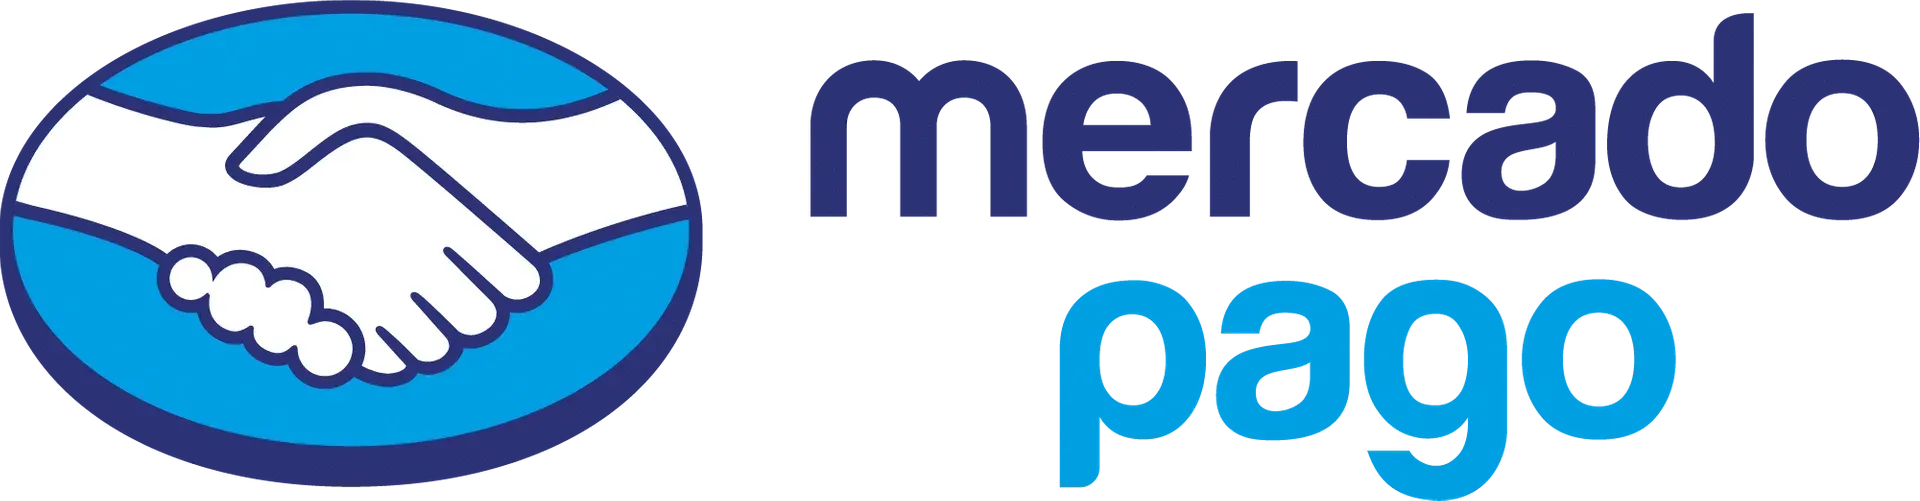 Logo de MercadoPago